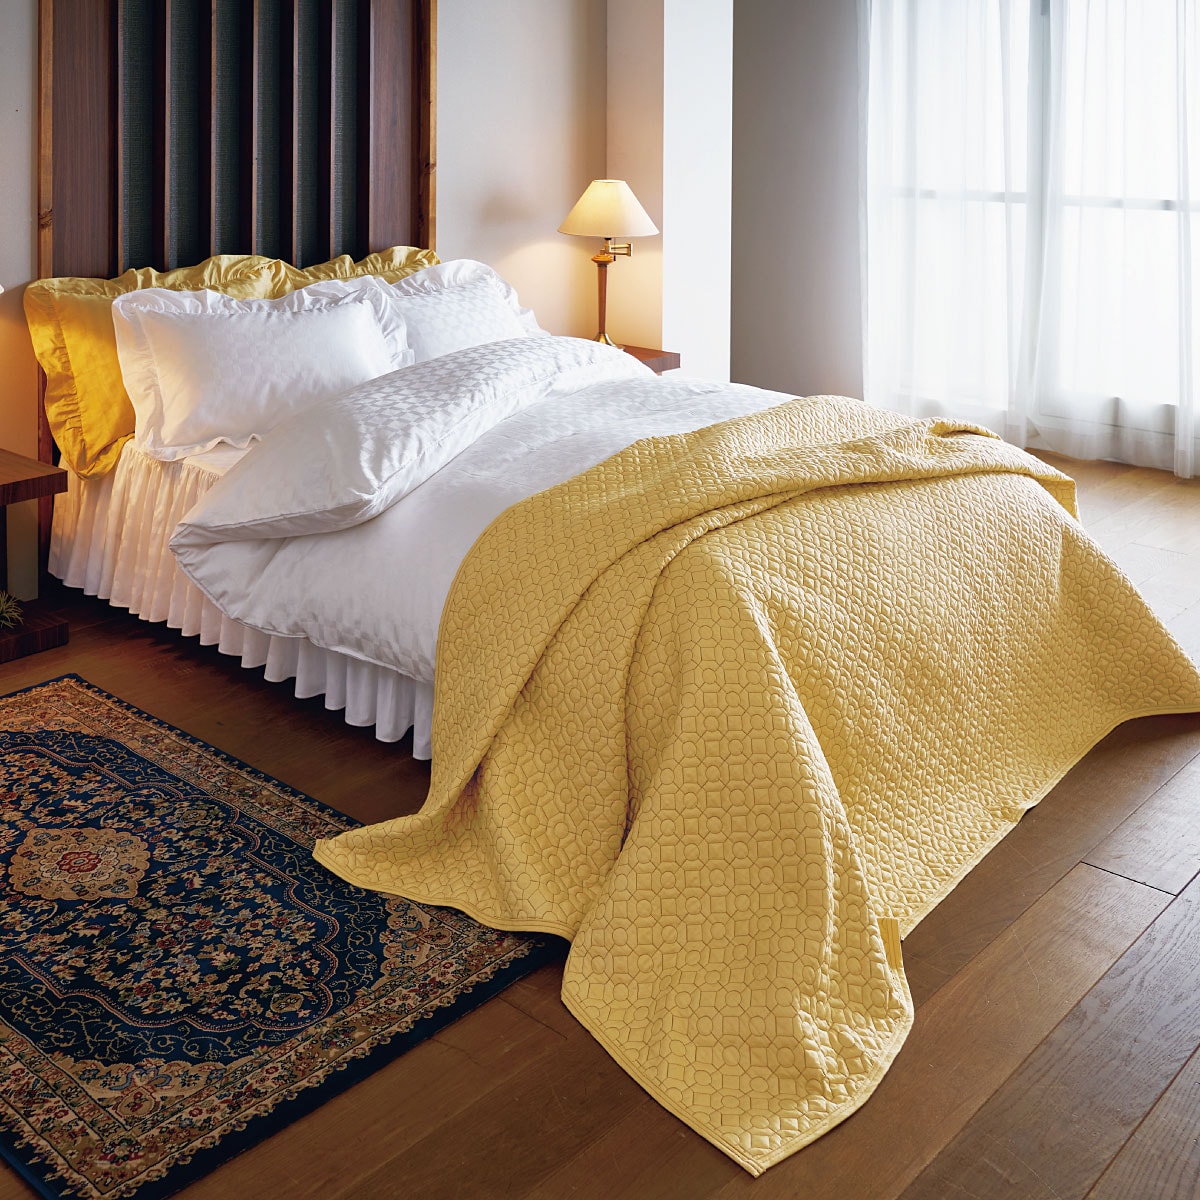 綿100%掛け布団カバー(ホテル感覚の高密度タイプ) - 寝具の通販なら